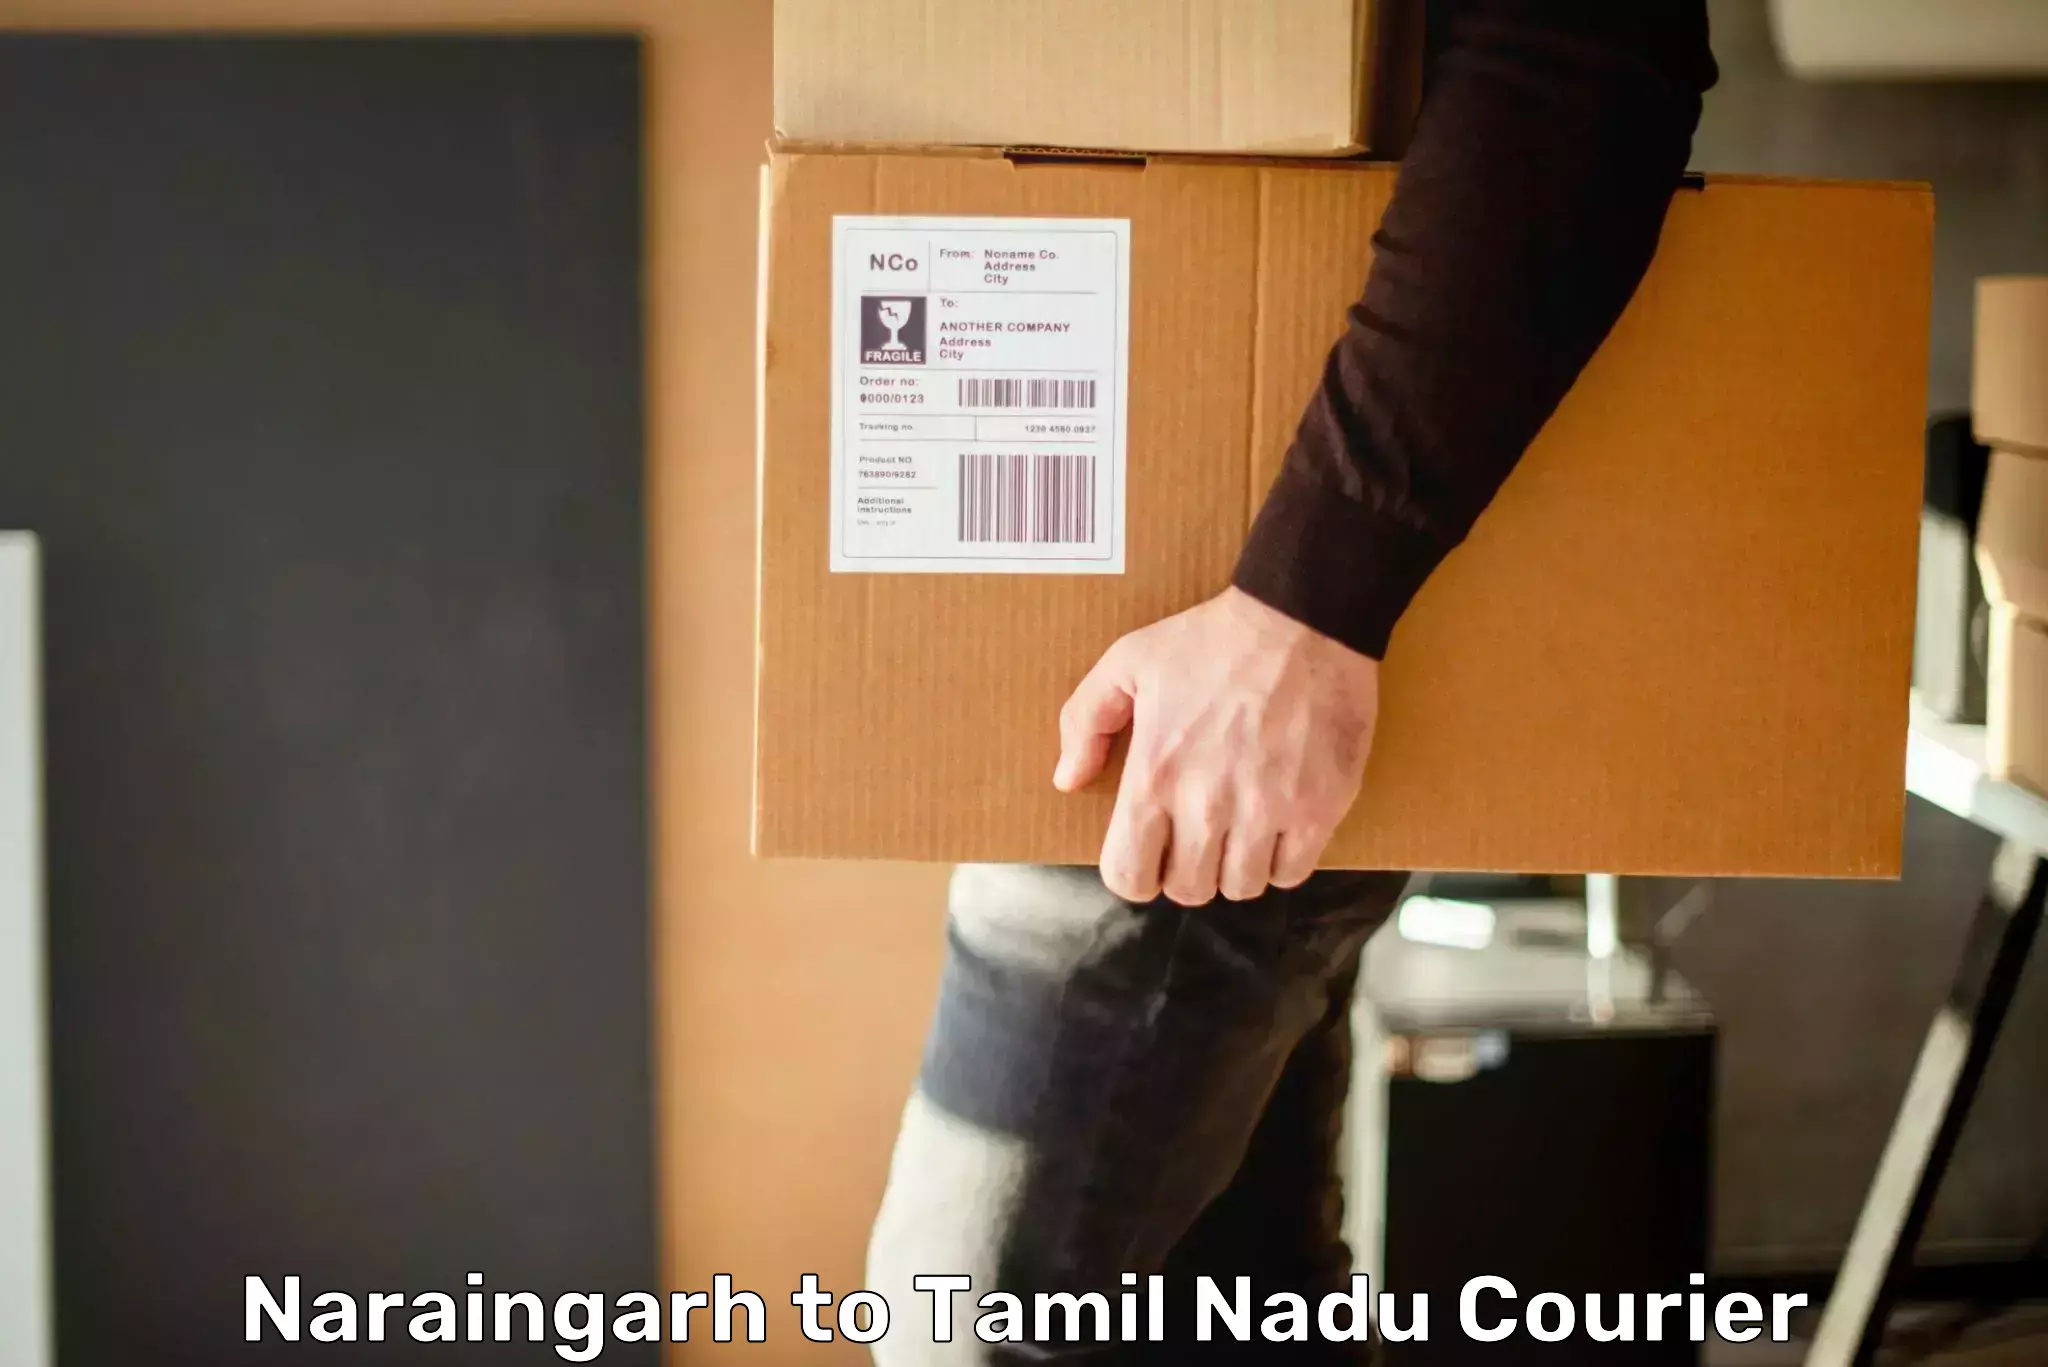 Bulk courier orders Naraingarh to Ambattur